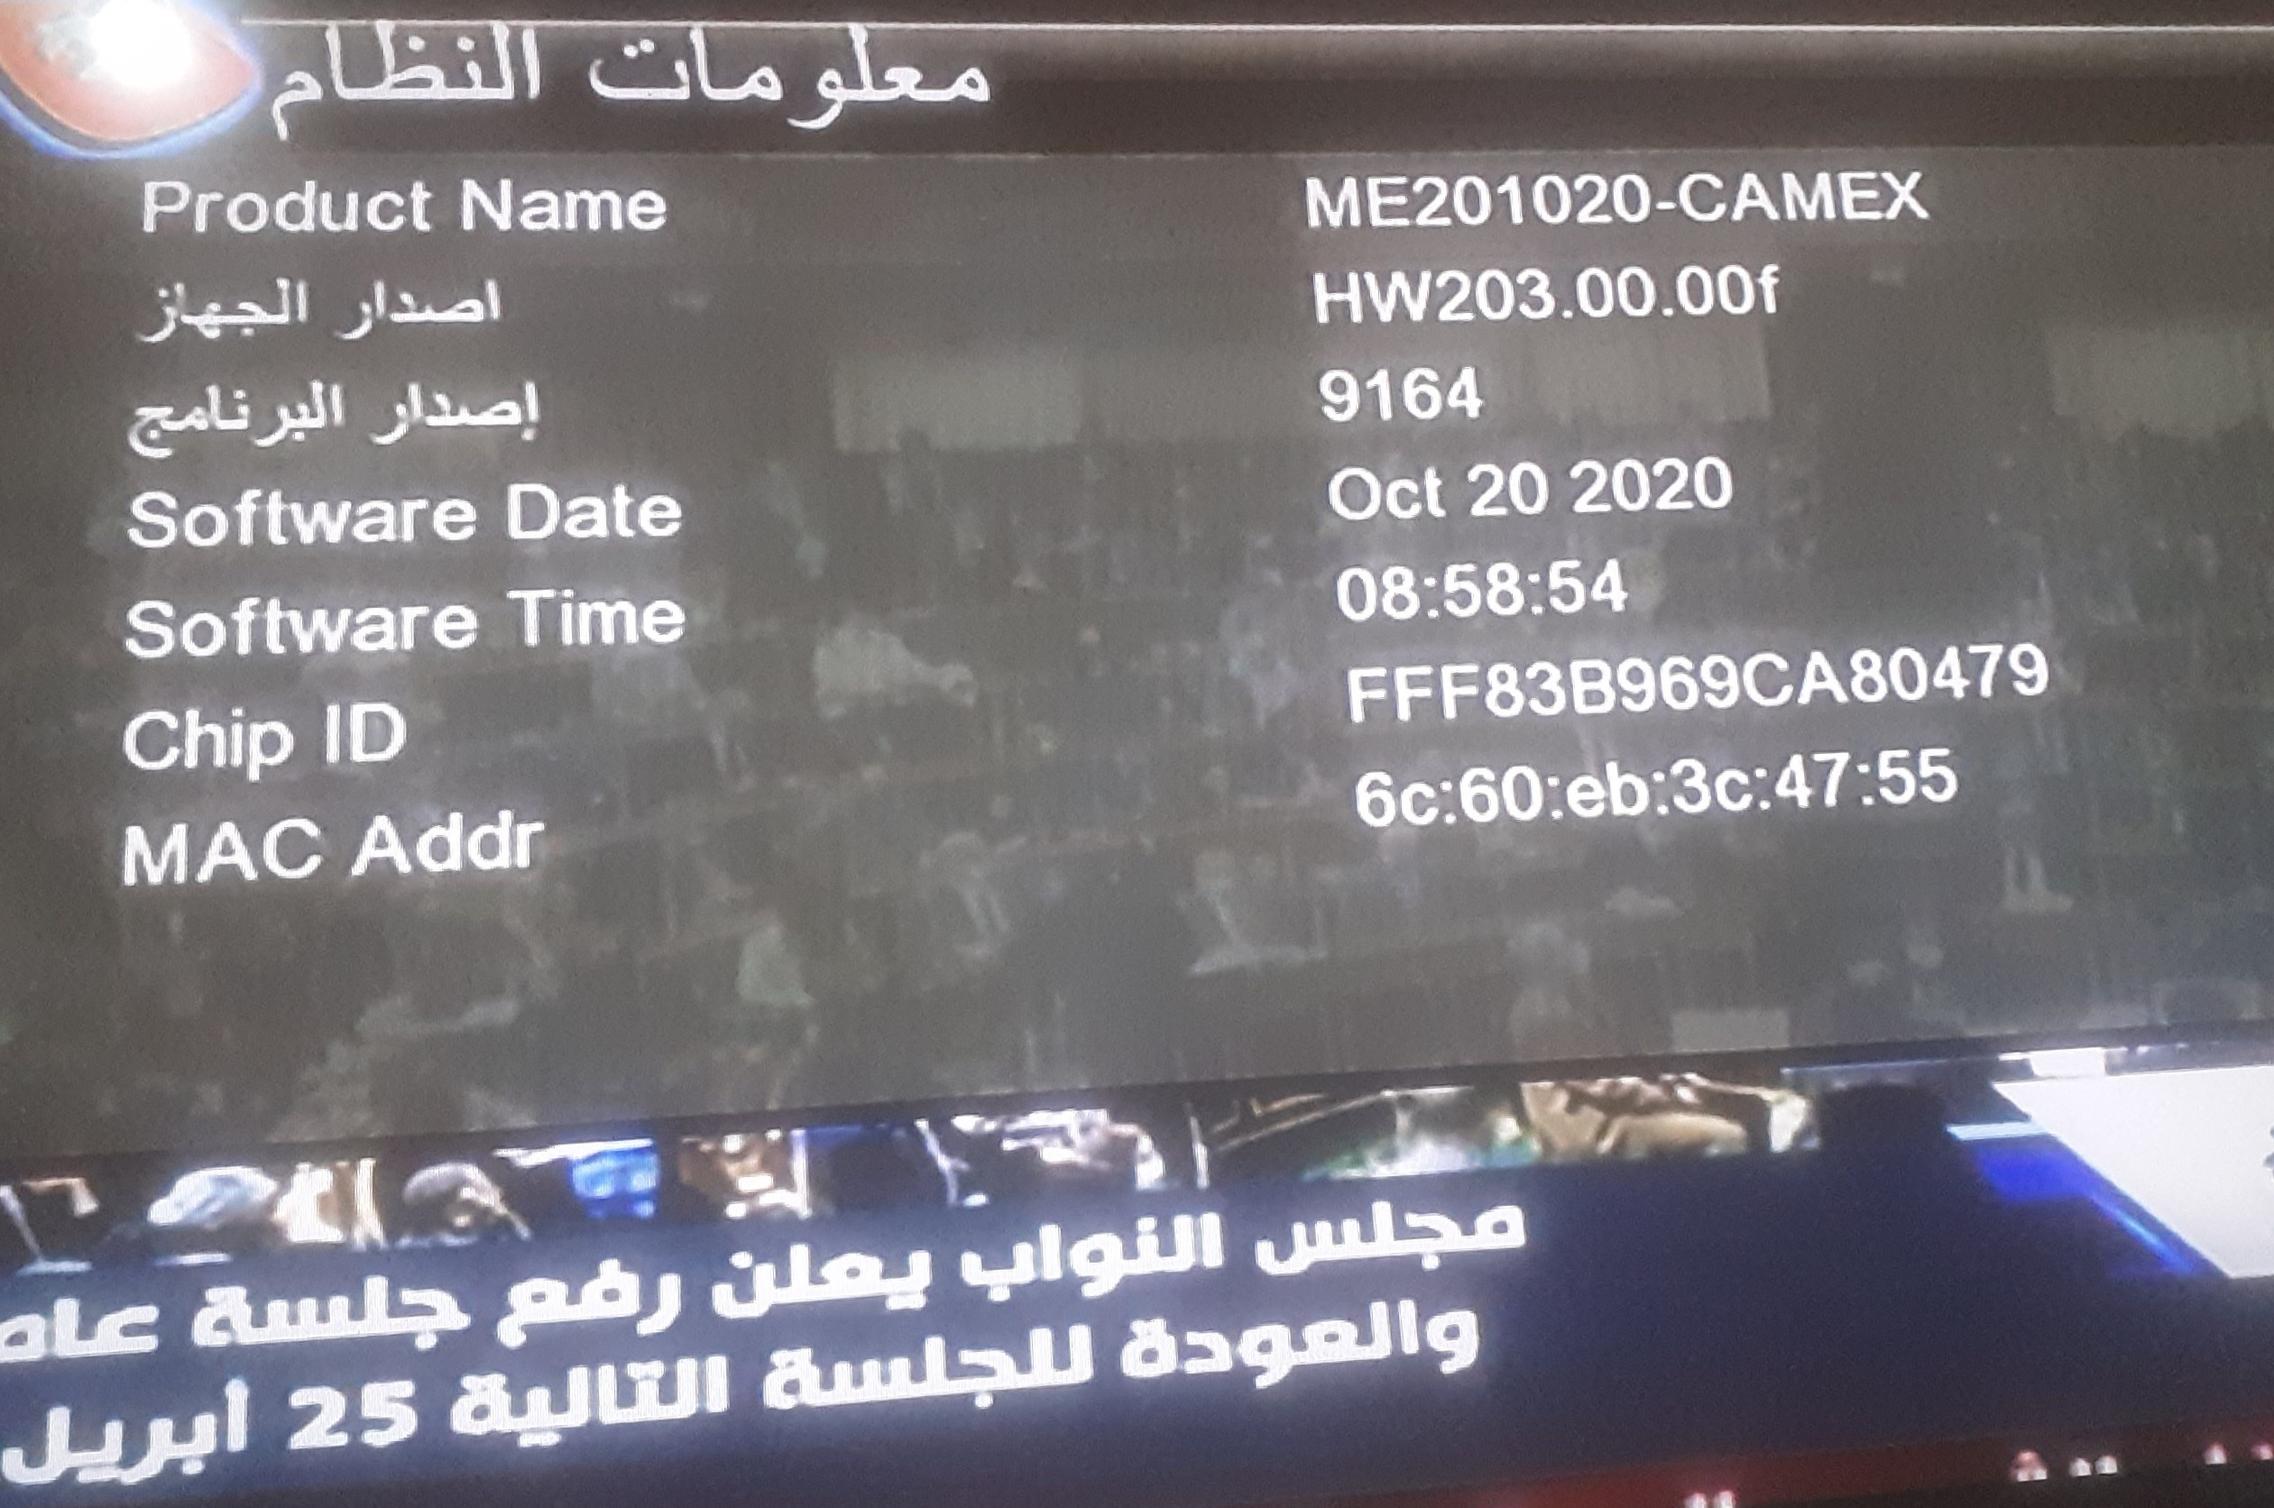 احدث ملف REDBOX RX-9000 HD MINI و royal 999 الاحمر المزود بـ 2 شاشة رقمية و CAMEX الاسود لشهر11-2022 P_24840jjjg2